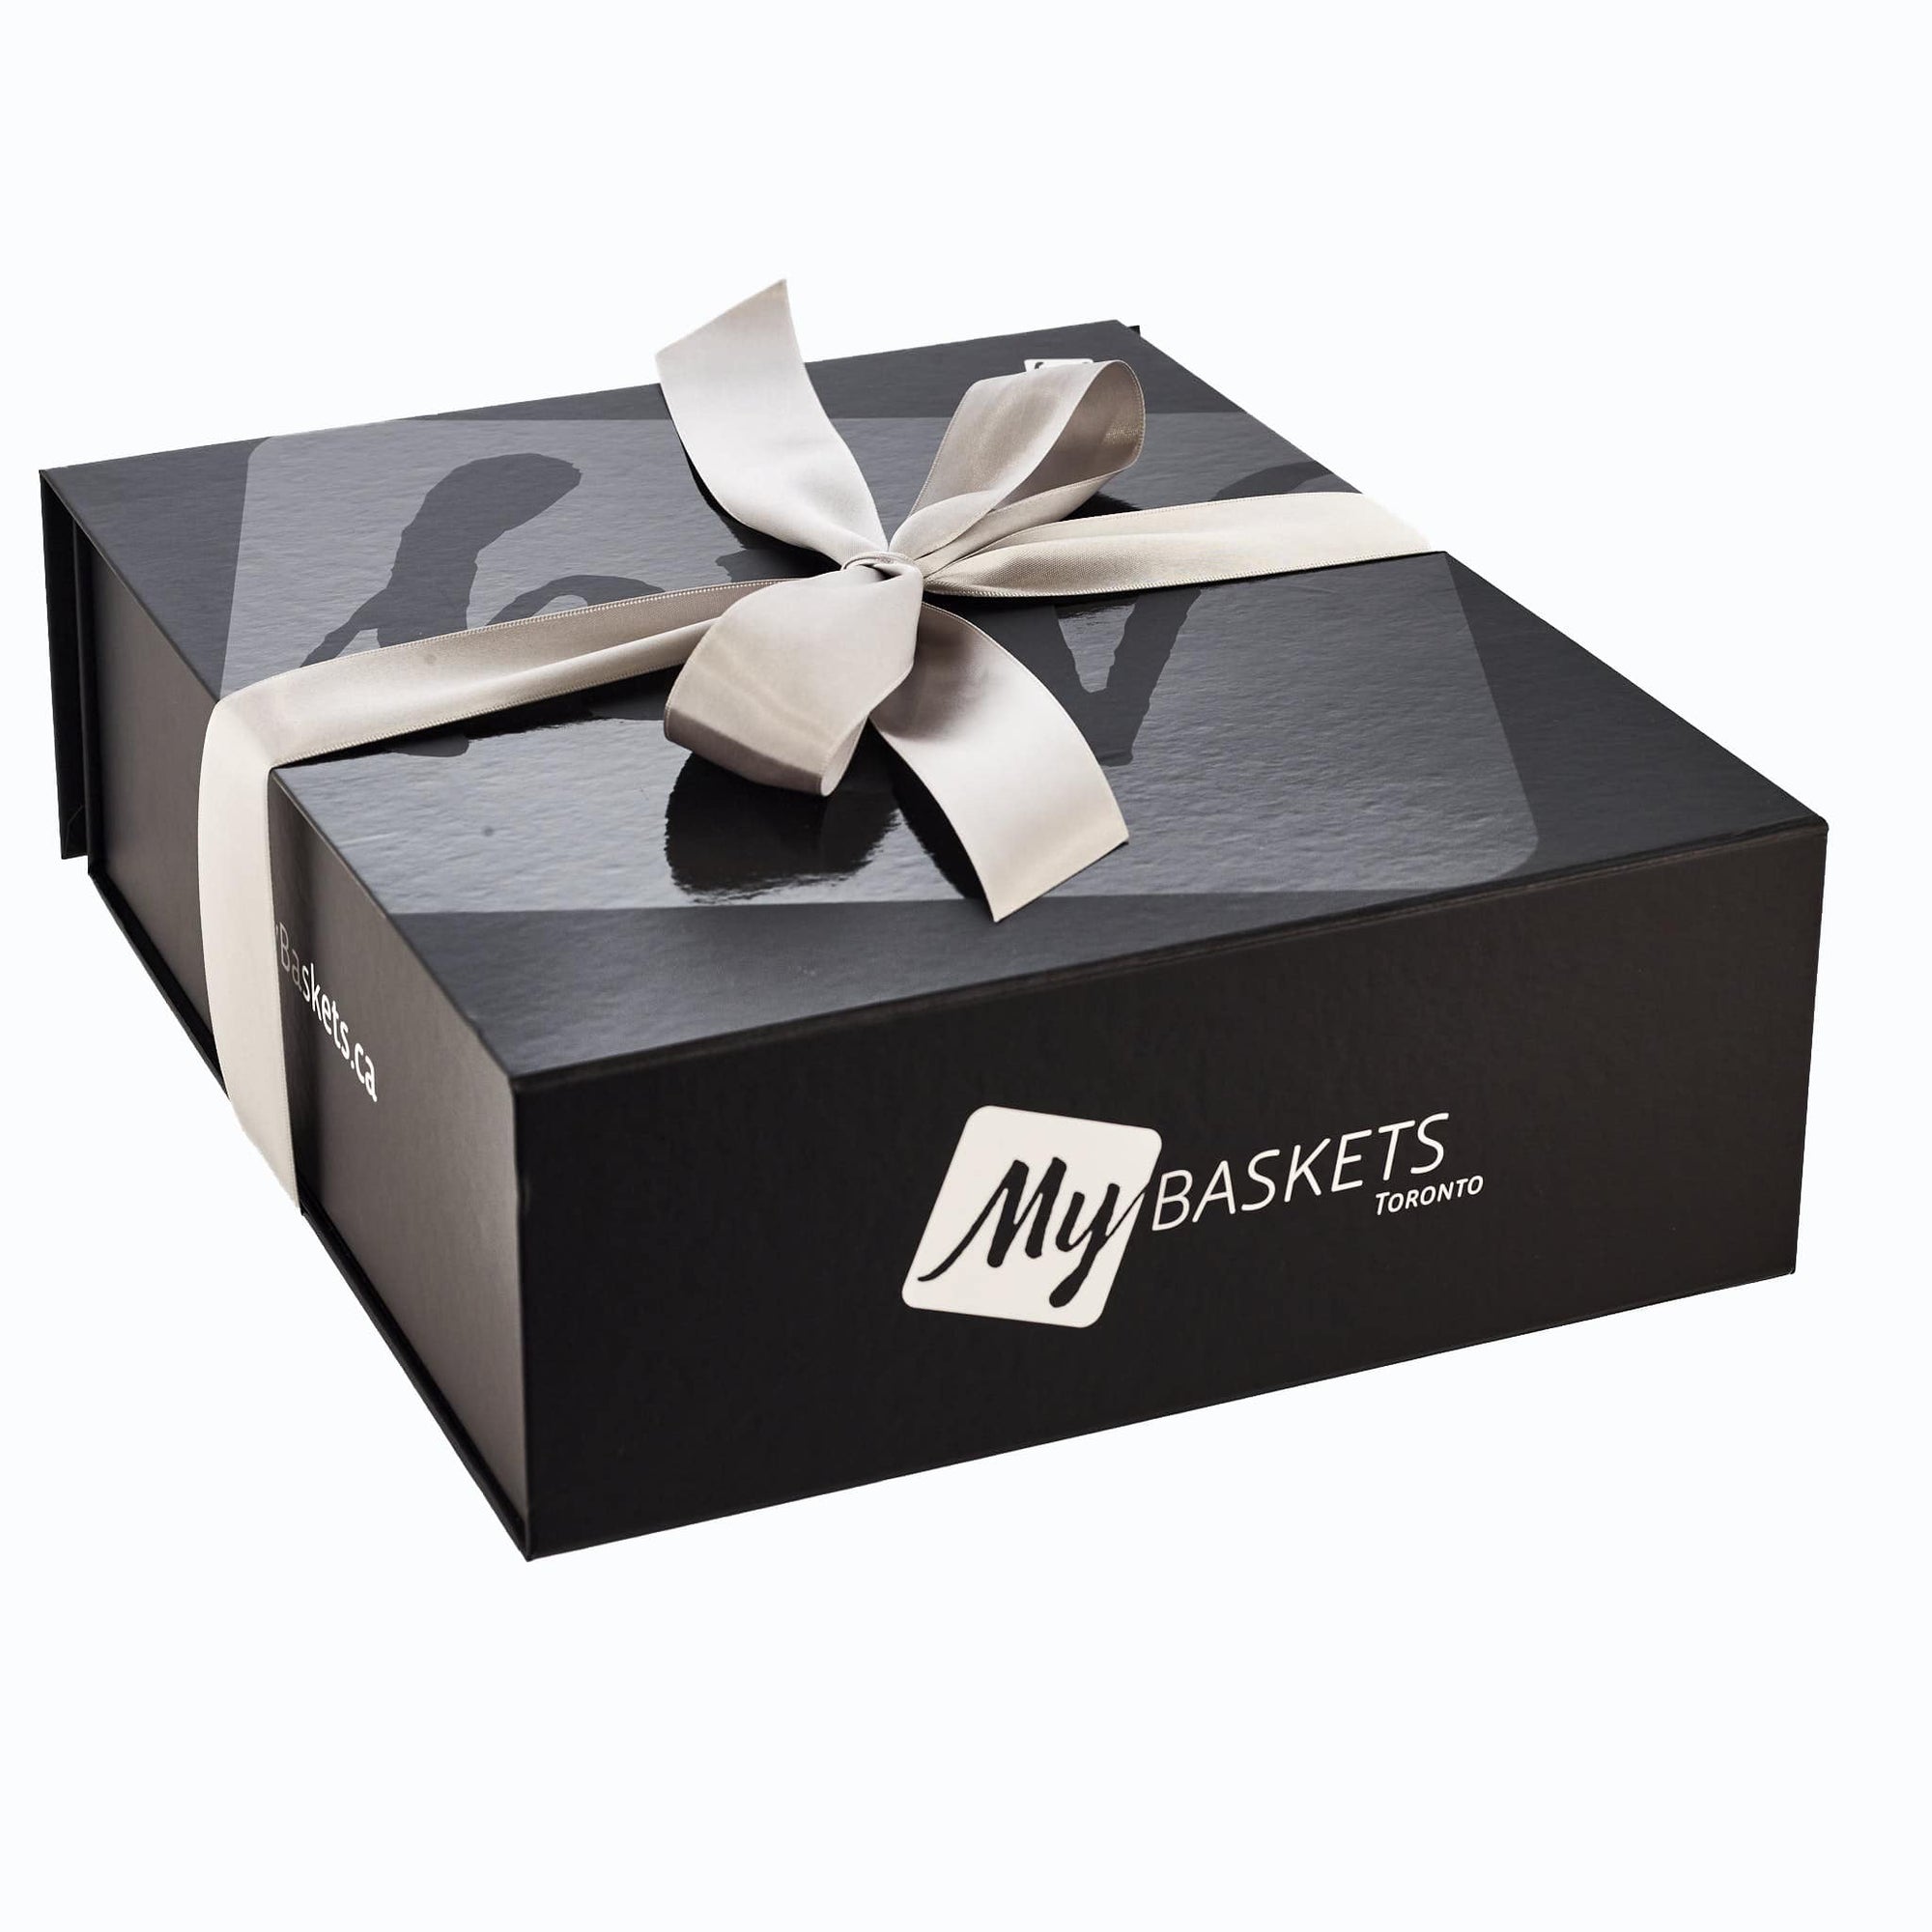 Luxury Wine And Cheese Gift Box 